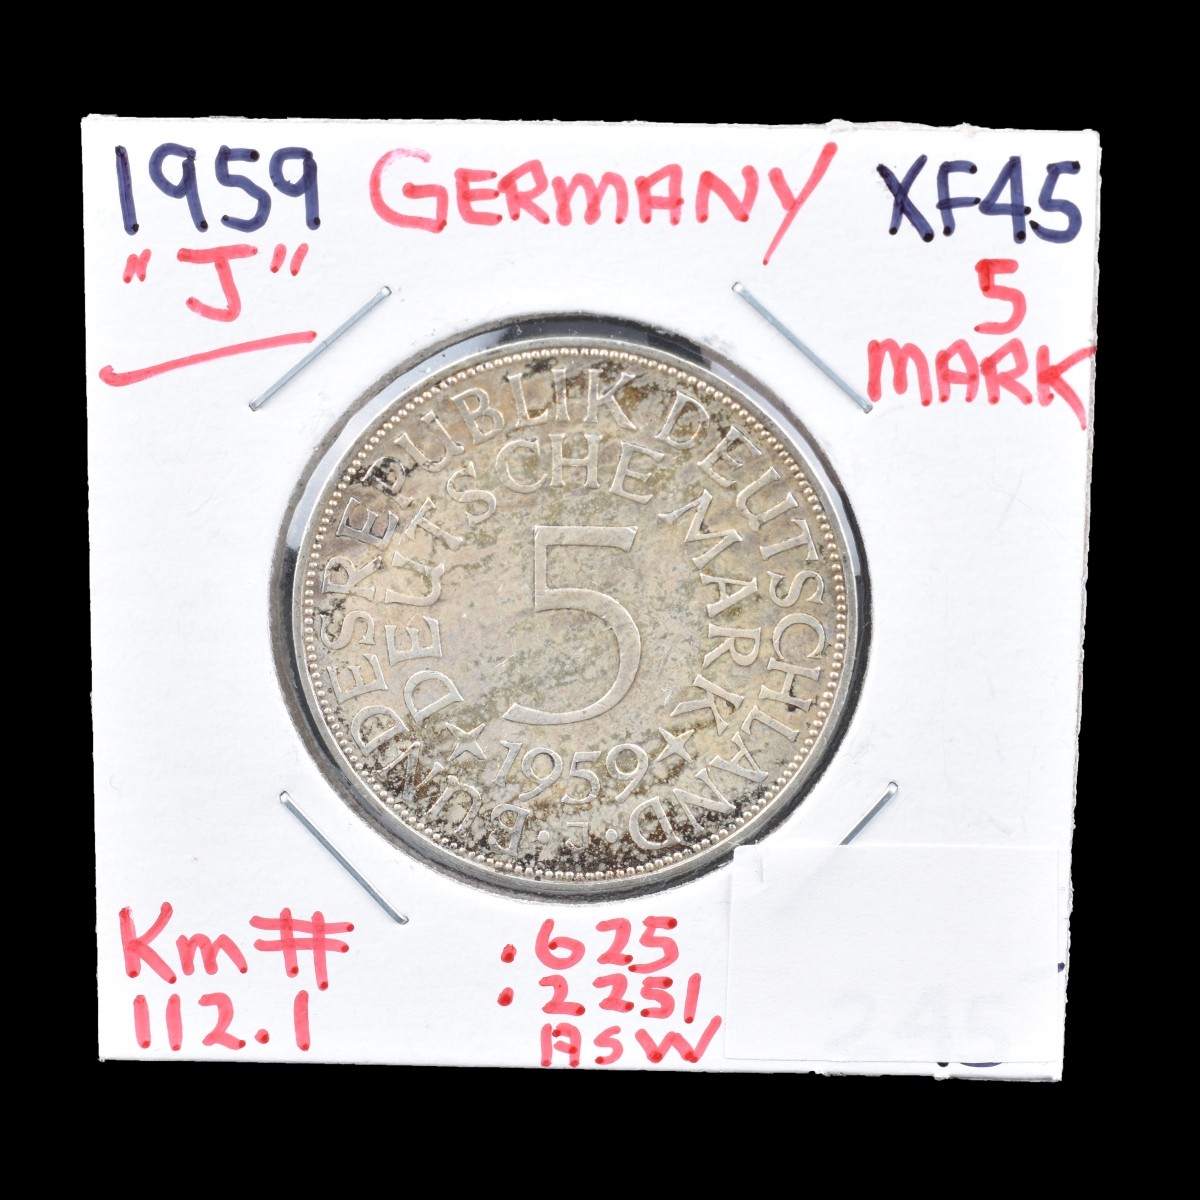 1959 Germany 5 Deutsche Mark